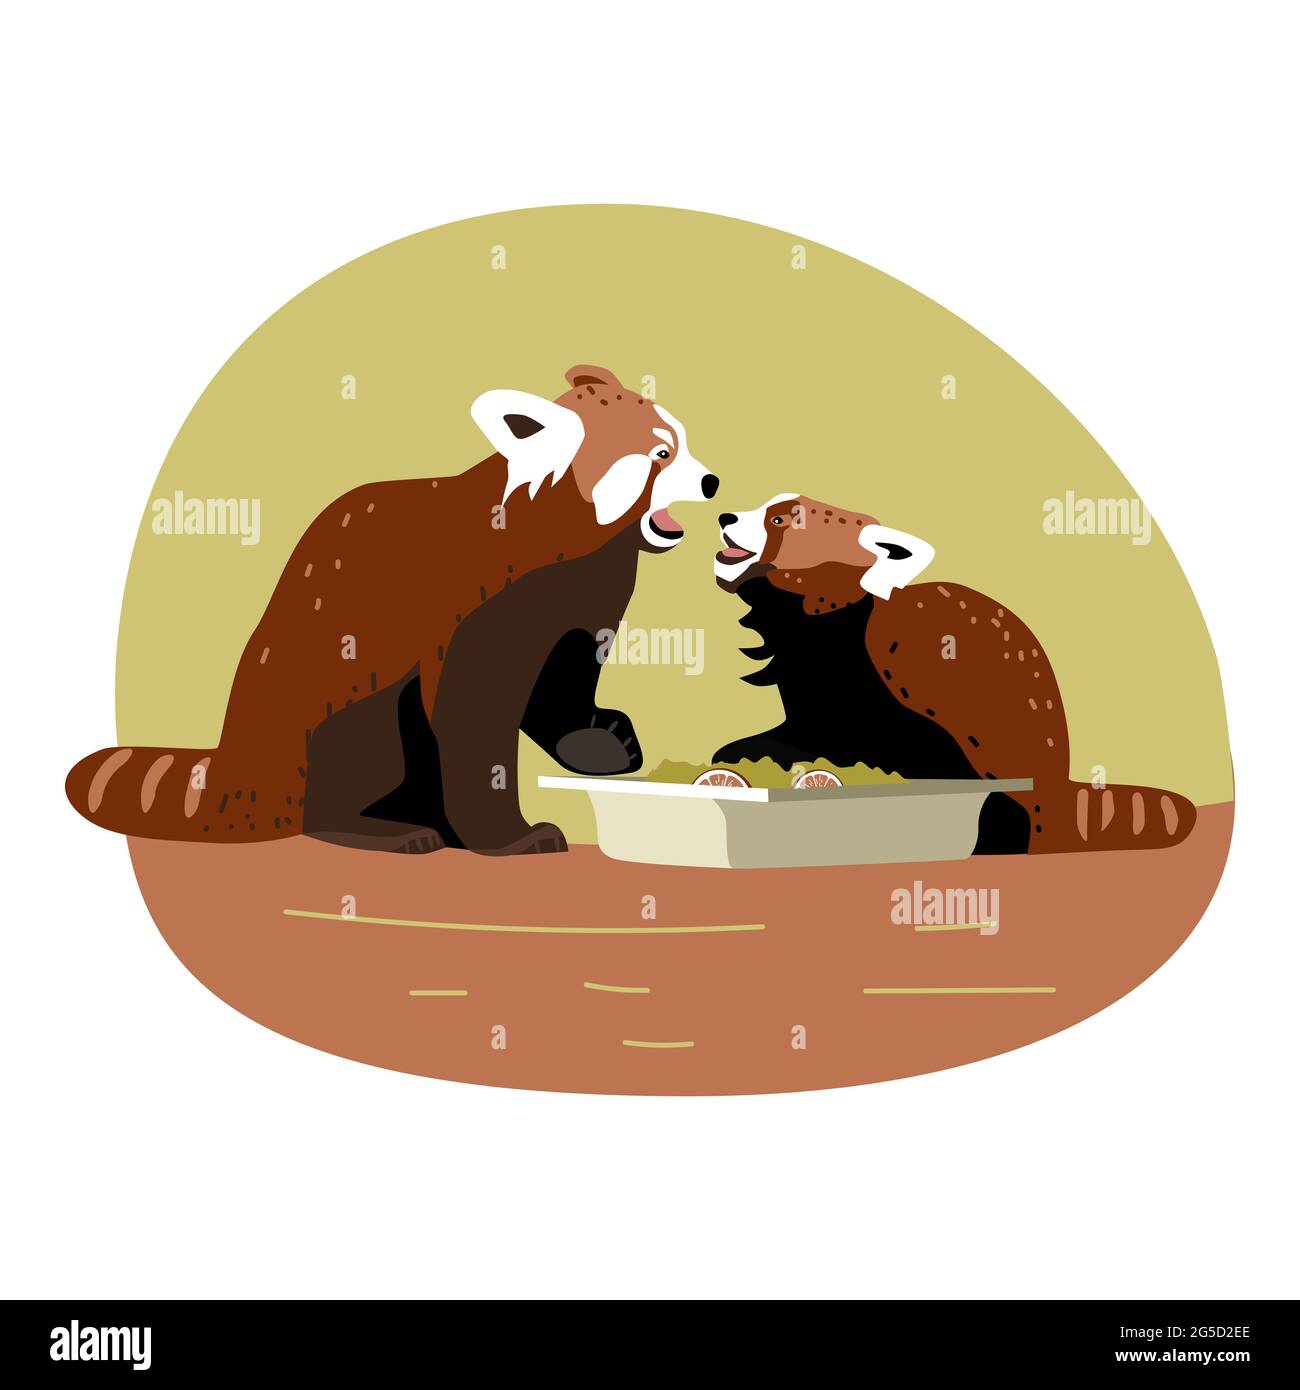 Madre e figlio di panda rosso a bocca aperta vicino alla ciotola del cibo, gli animali esprimono emozioni, lite di famiglia per i ricordi, illustrazione dei bambini, disegnata a mano Illustrazione Vettoriale